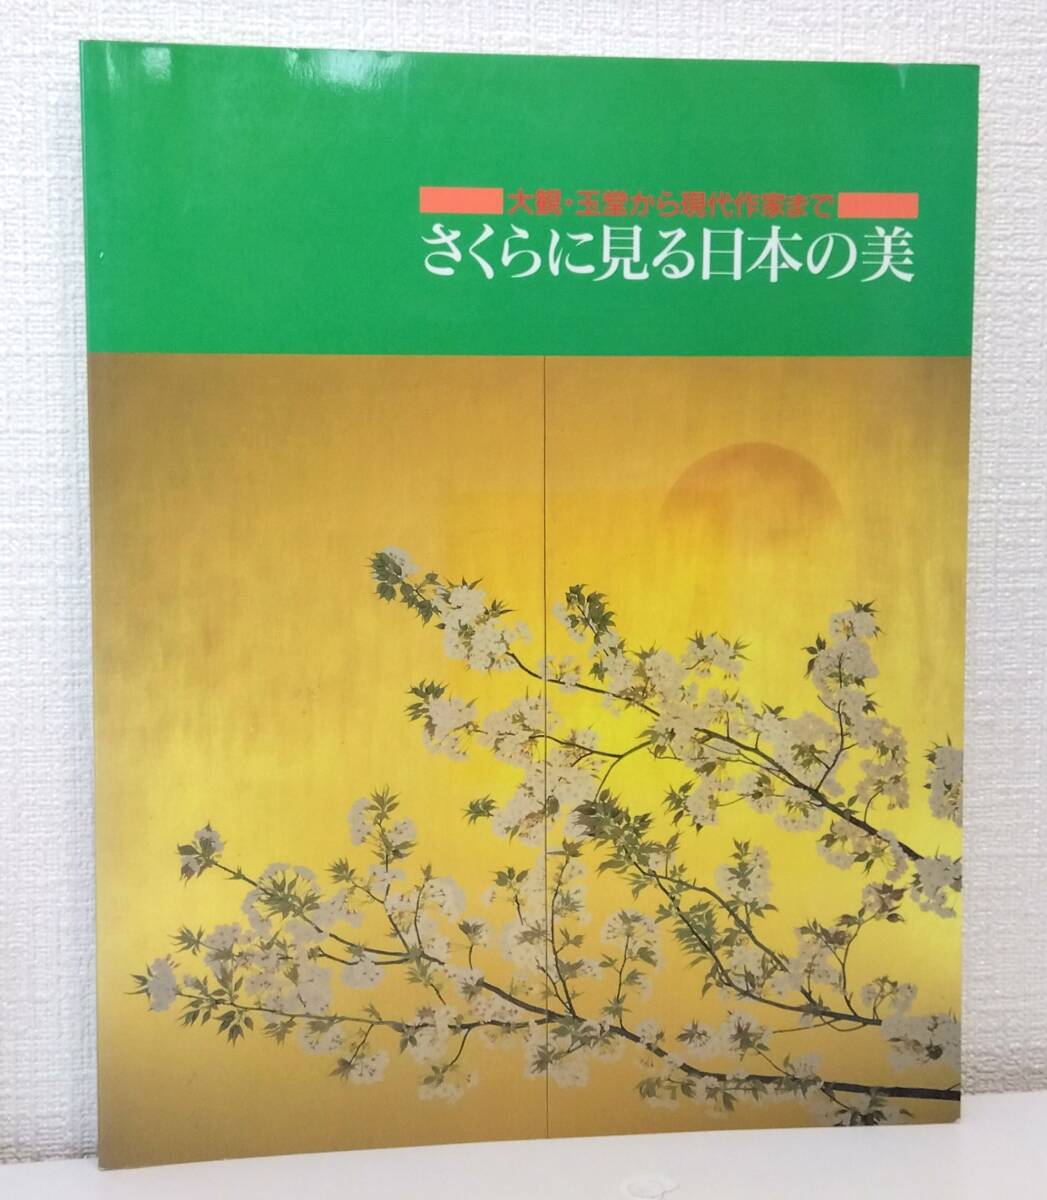 A■ La belleza de Japón vista en los cerezos en flor: desde Taikan y Gyokudō hasta los artistas contemporáneos Agencia de Noticias Kyodo Arte y pinturas de los cerezos en flor, Cuadro, Libro de arte, Recopilación, Catalogar